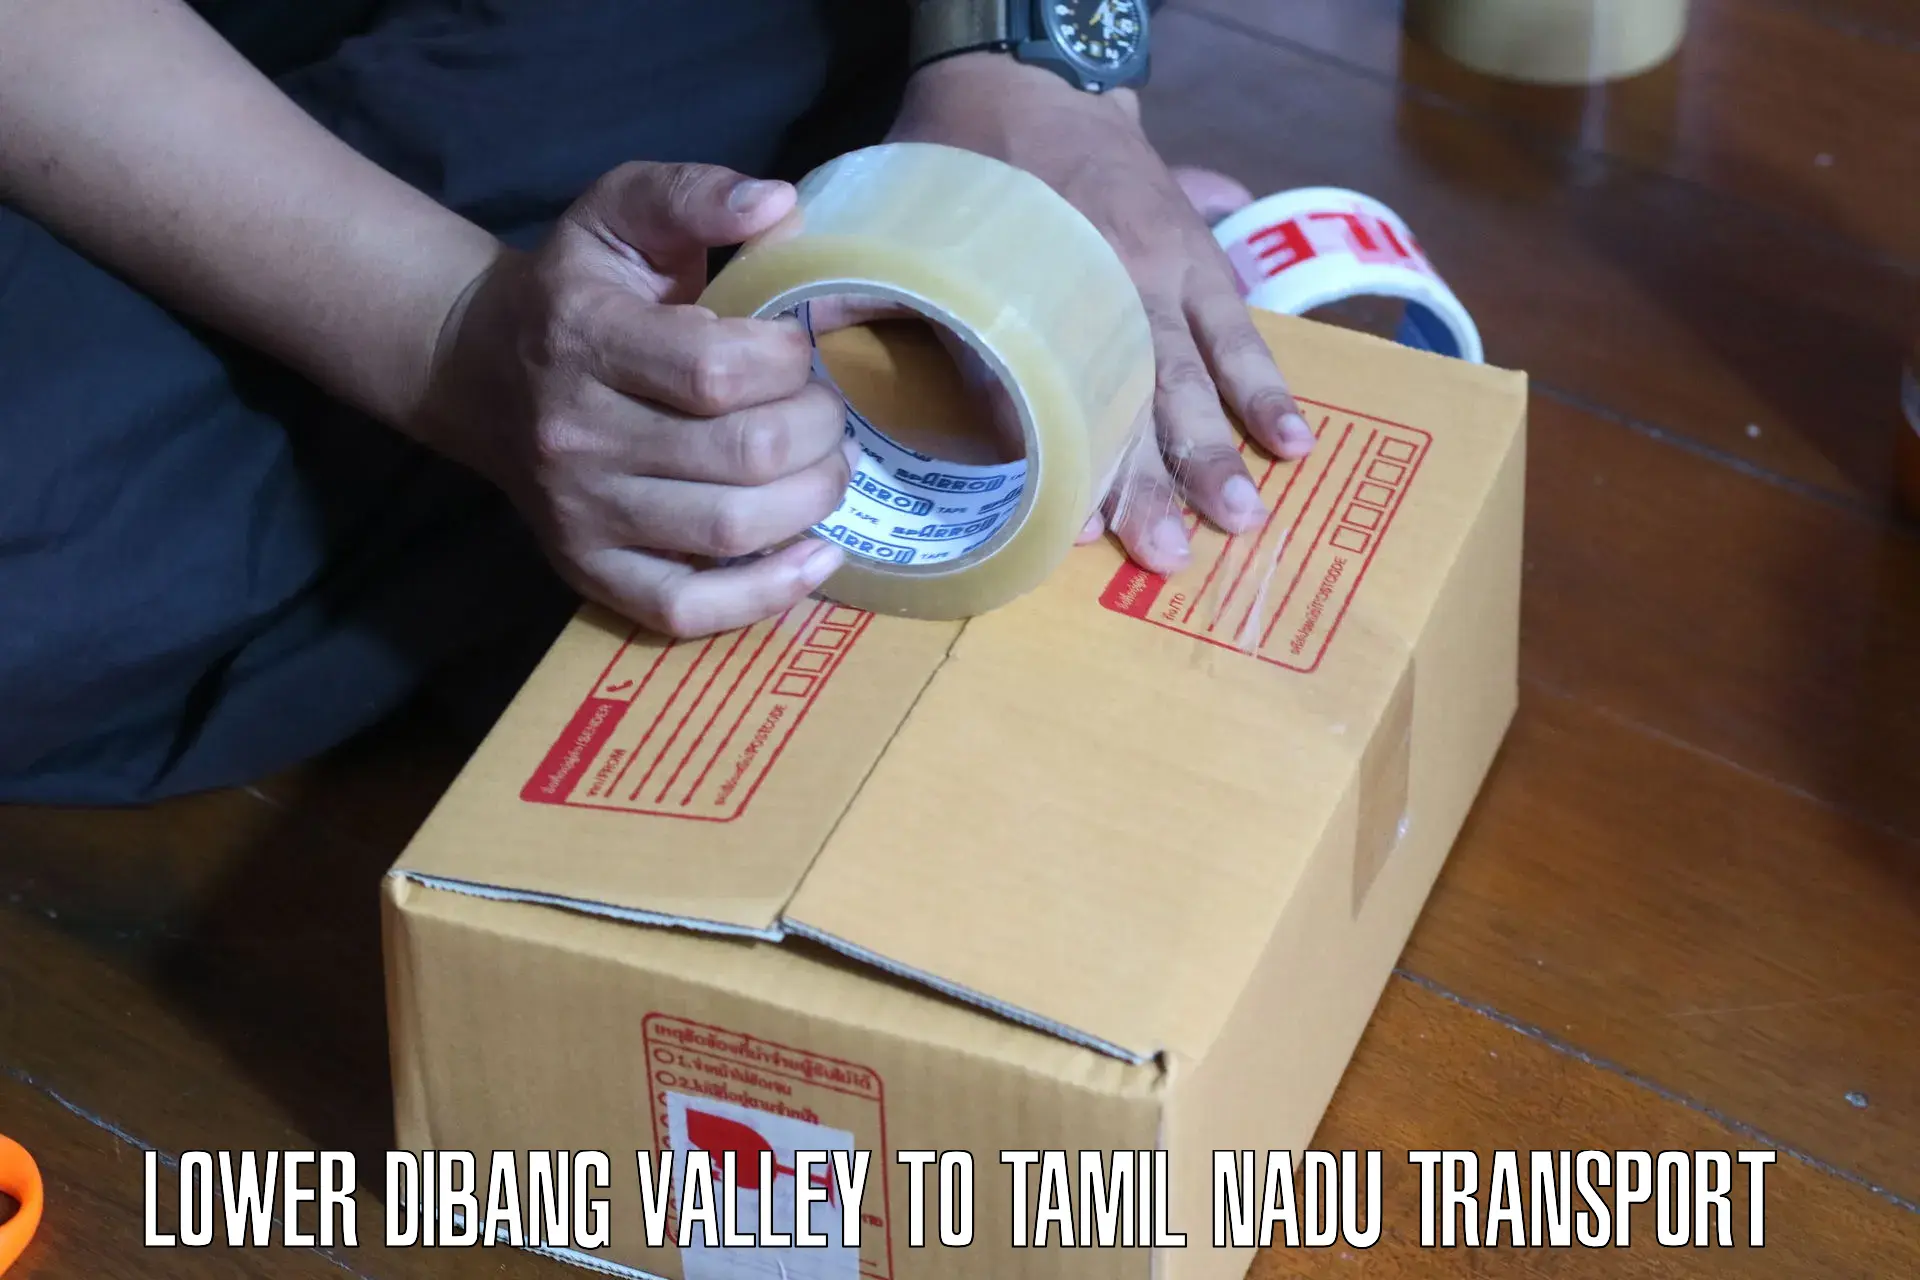 Daily parcel service transport Lower Dibang Valley to Karaikudi